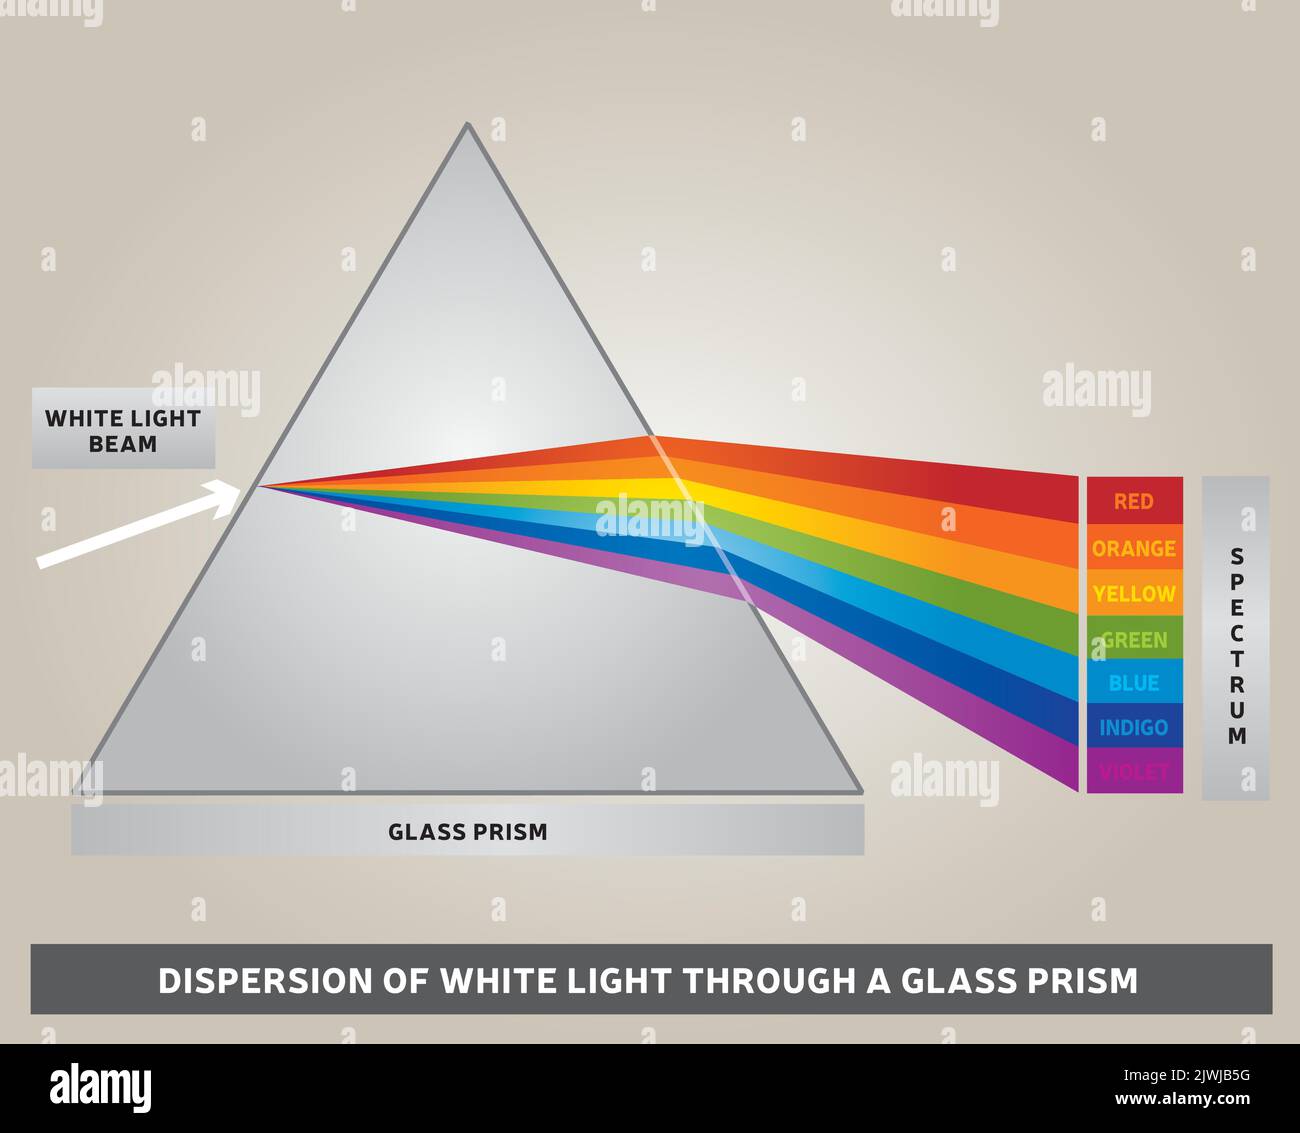 Dispersion de la lumière blanche à travers un prisme de verre - diagramme - vecteur - couleurs arc-en-ciel - rayons lumineux Illustration de Vecteur